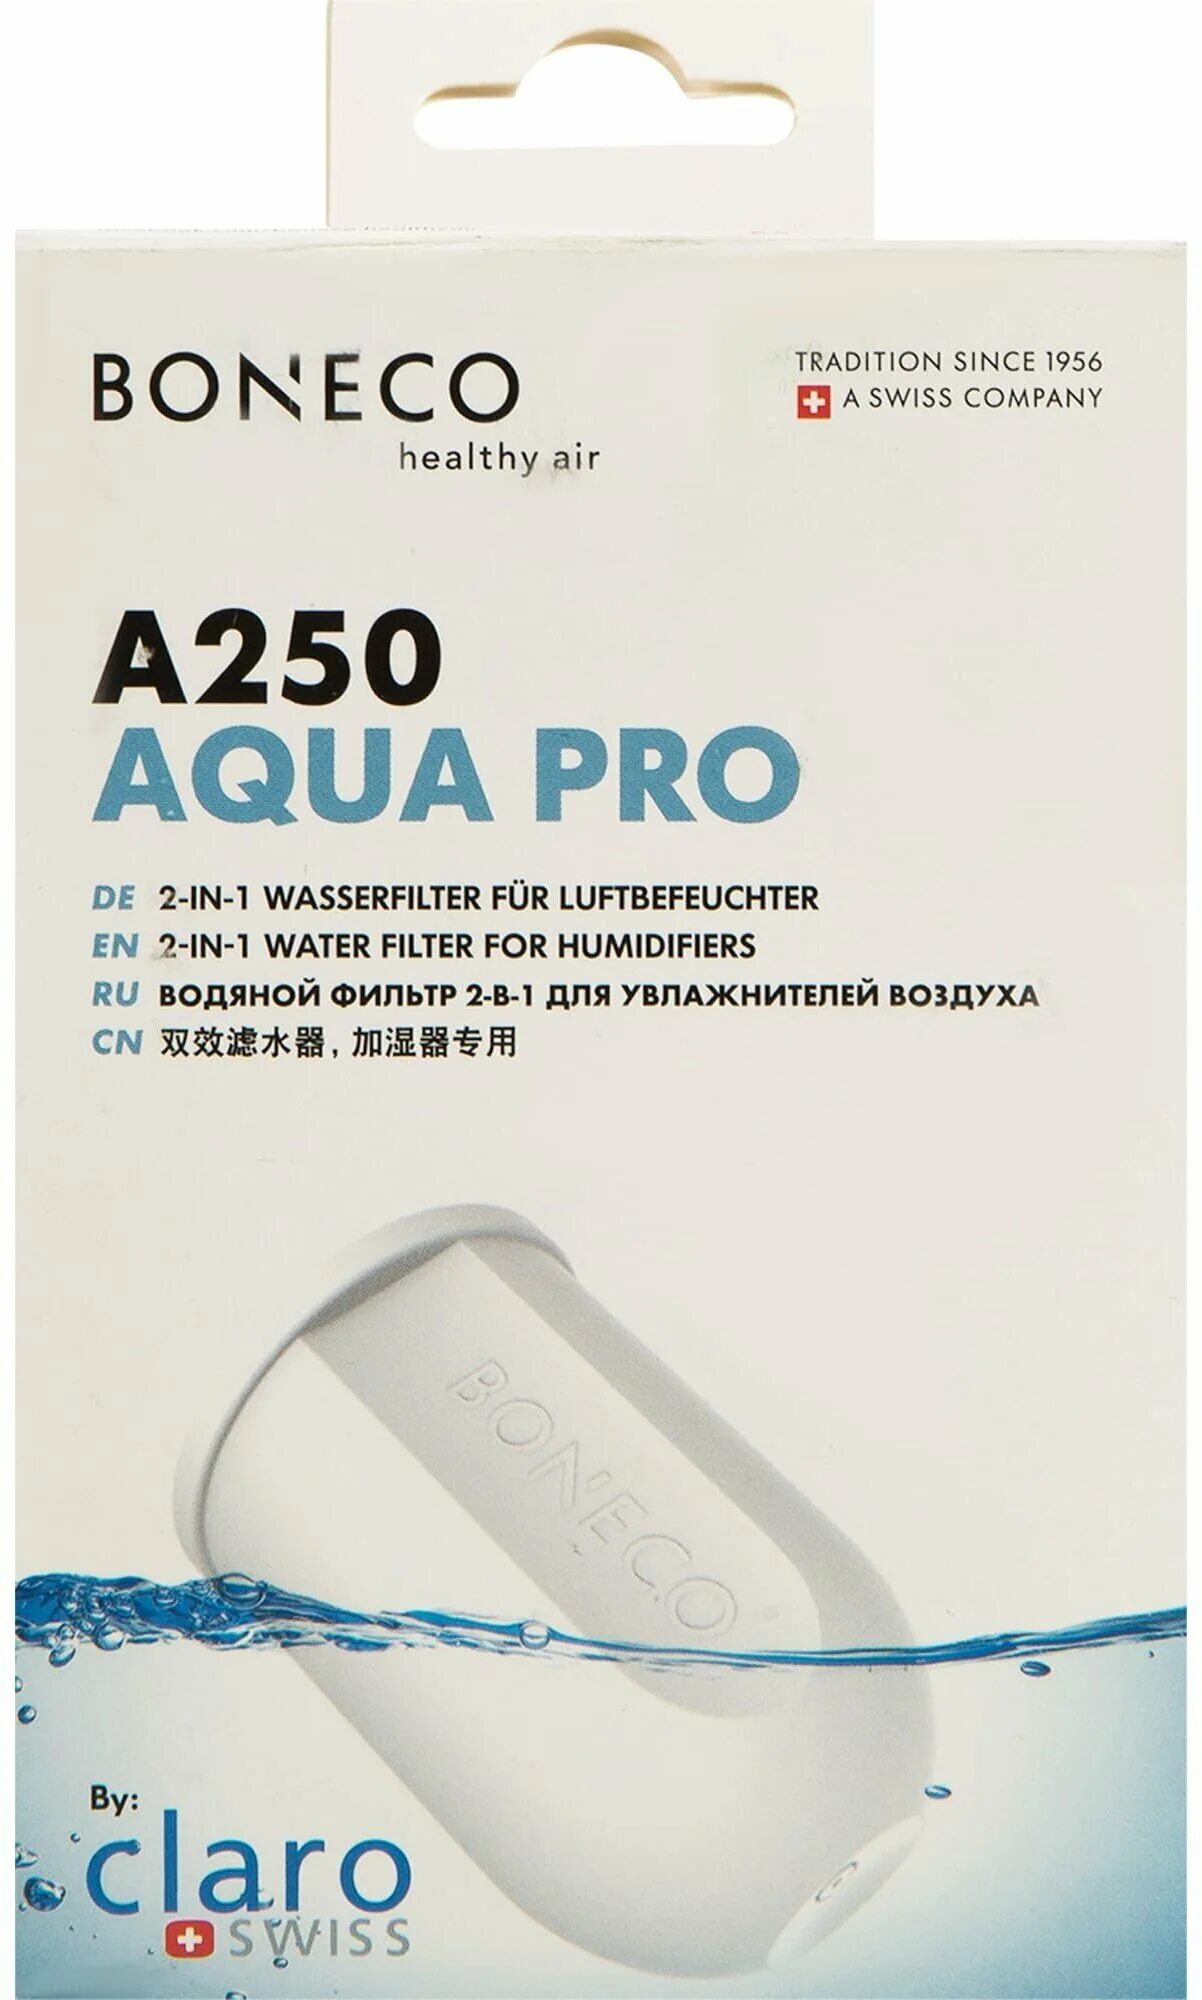 Boneco фильтры купить. Фильтр Boneco a250. Фильтр-картридж Boneco a250. Фильтр для Бонеко увлажнитель. Фильтр для увлажнителя воздуха Бонеко.